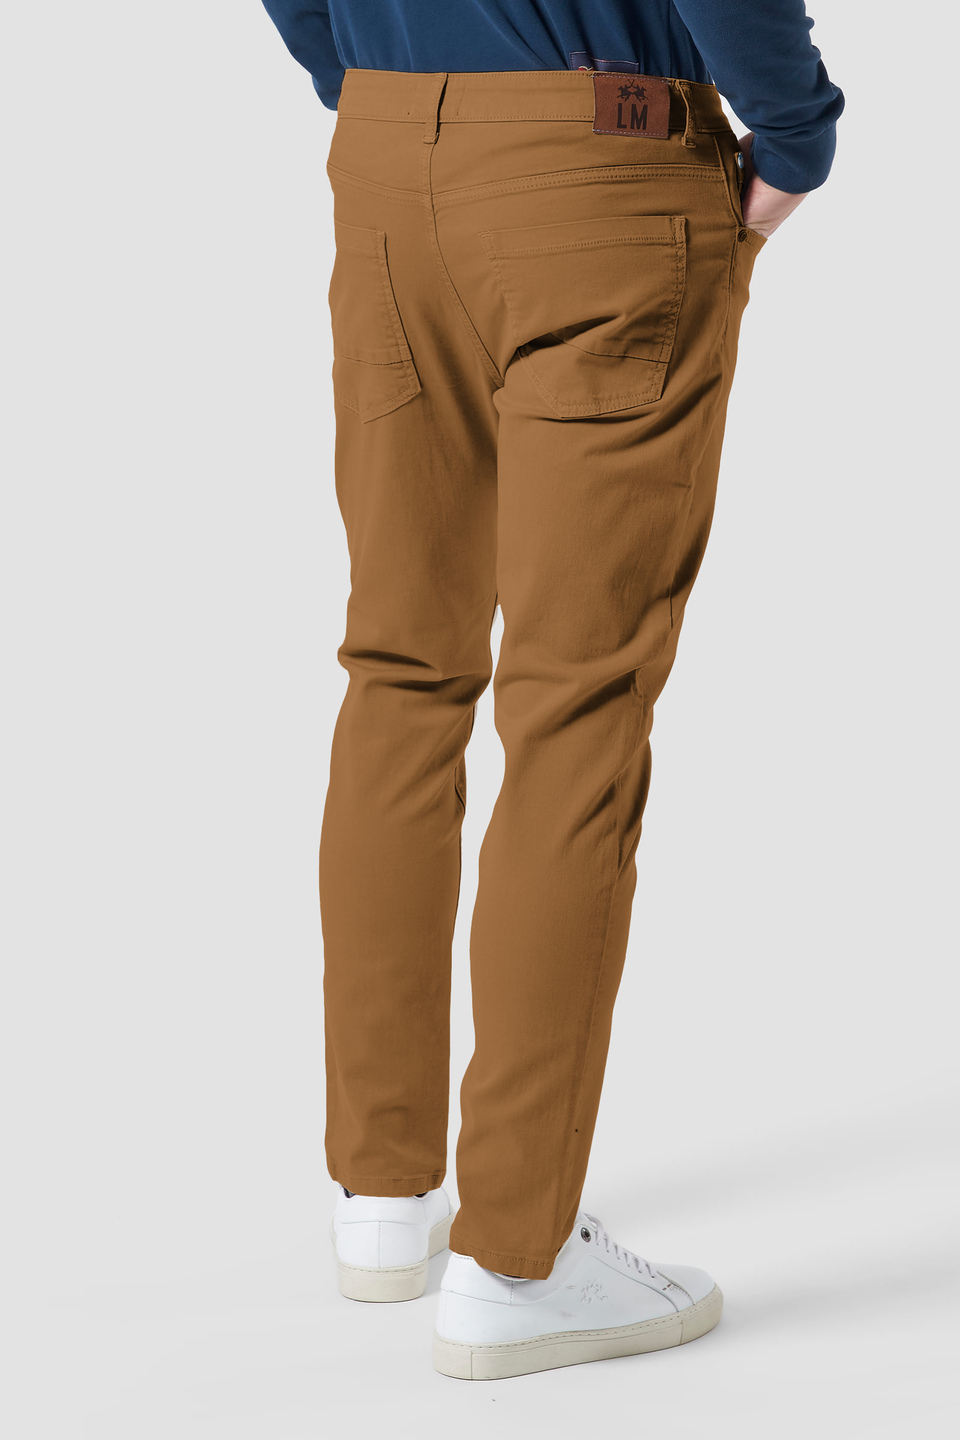 5-pocket stretch cotton trousers - La Martina - Official Online Shop